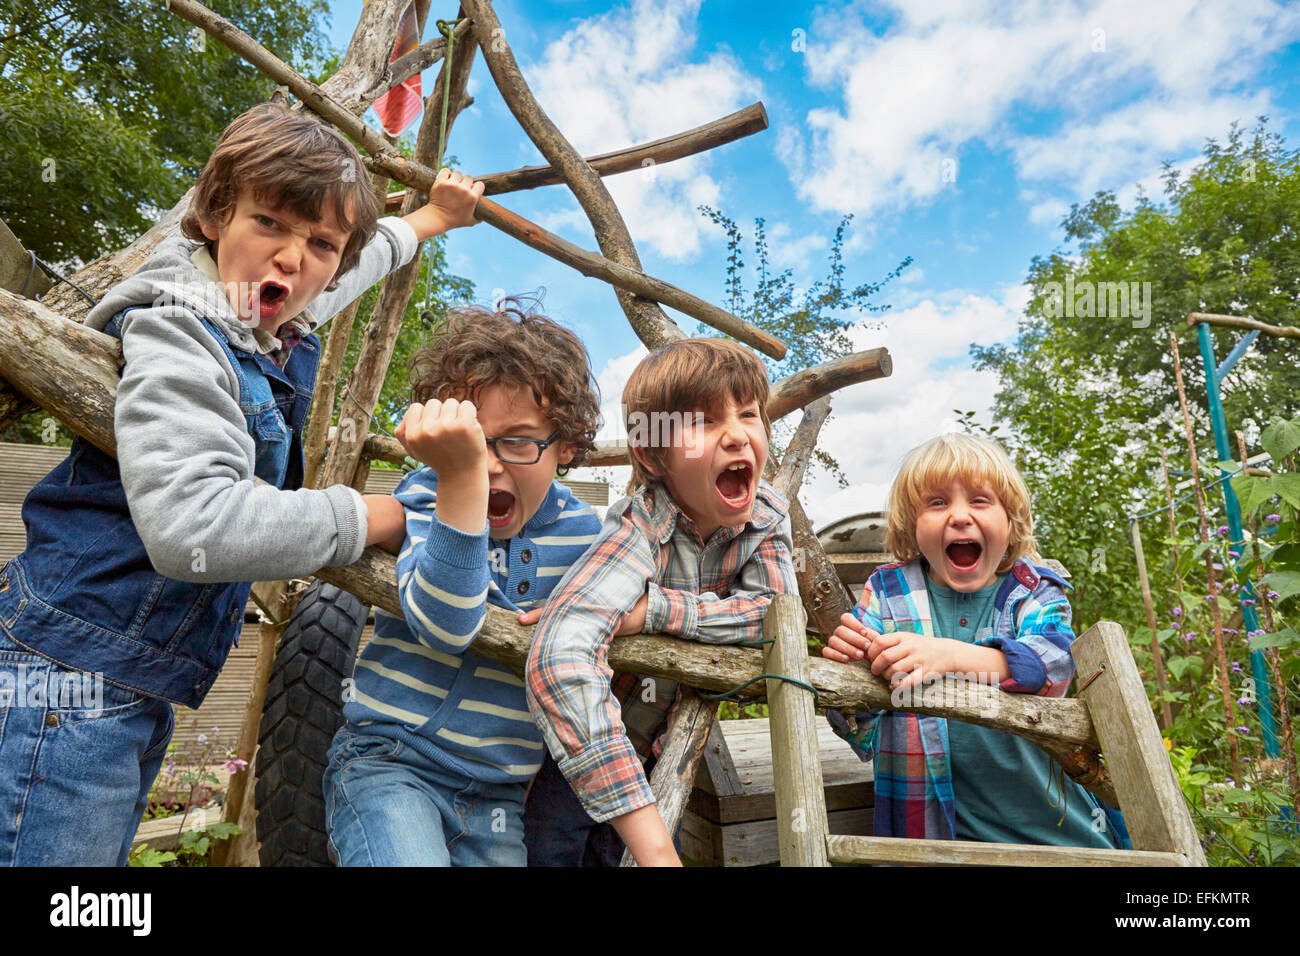 Quatre garçon crier sur des châssis d'escalade dans la région de jardin Banque D'Images